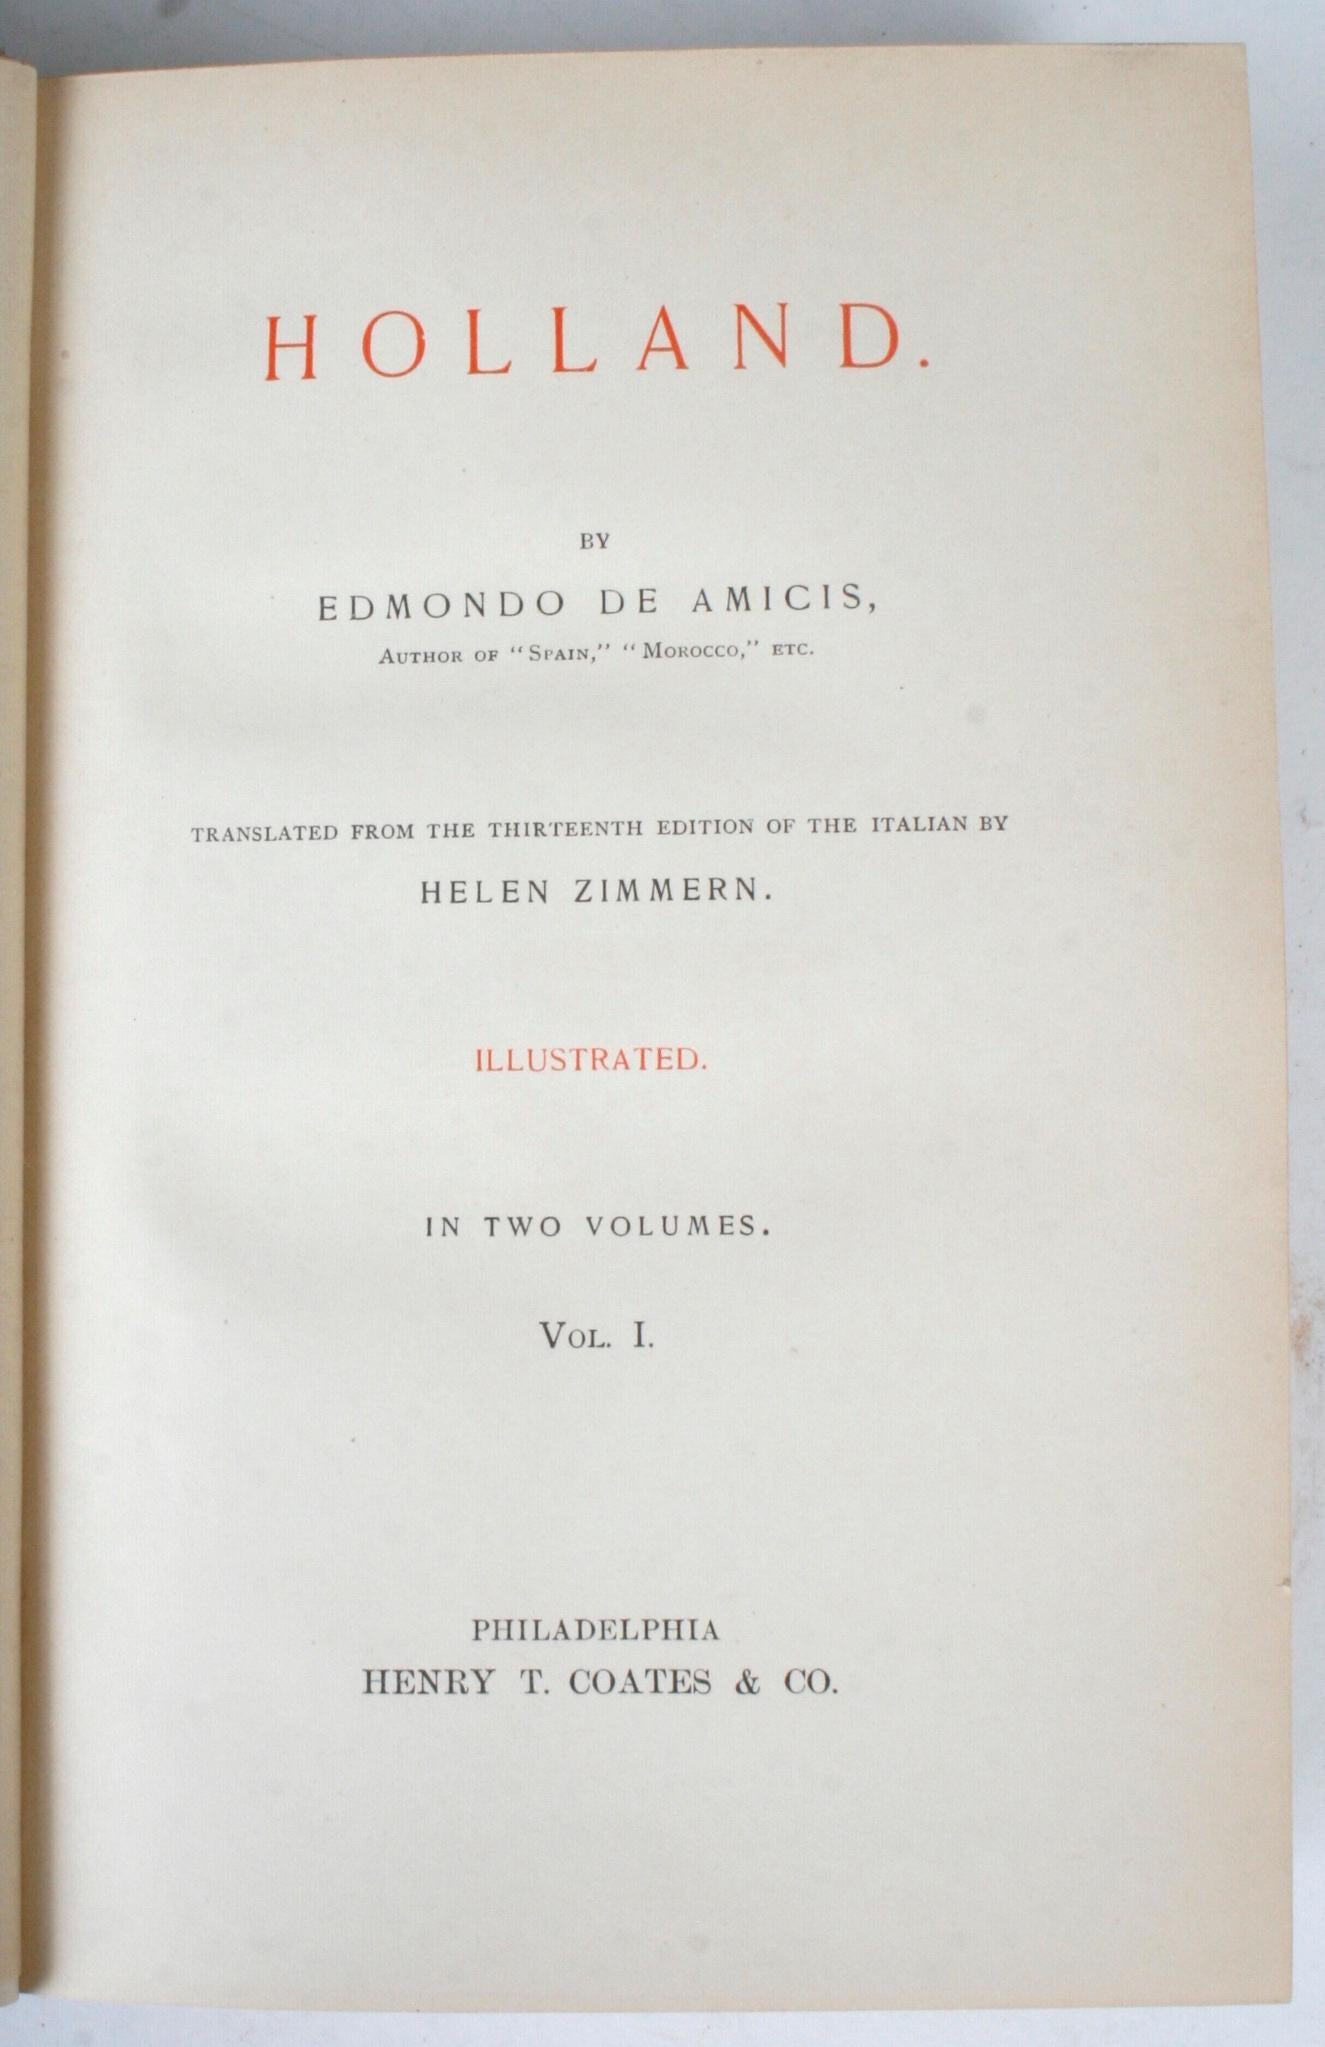 American Holland by Edmondo De Amicis in Two Volumes, 1894